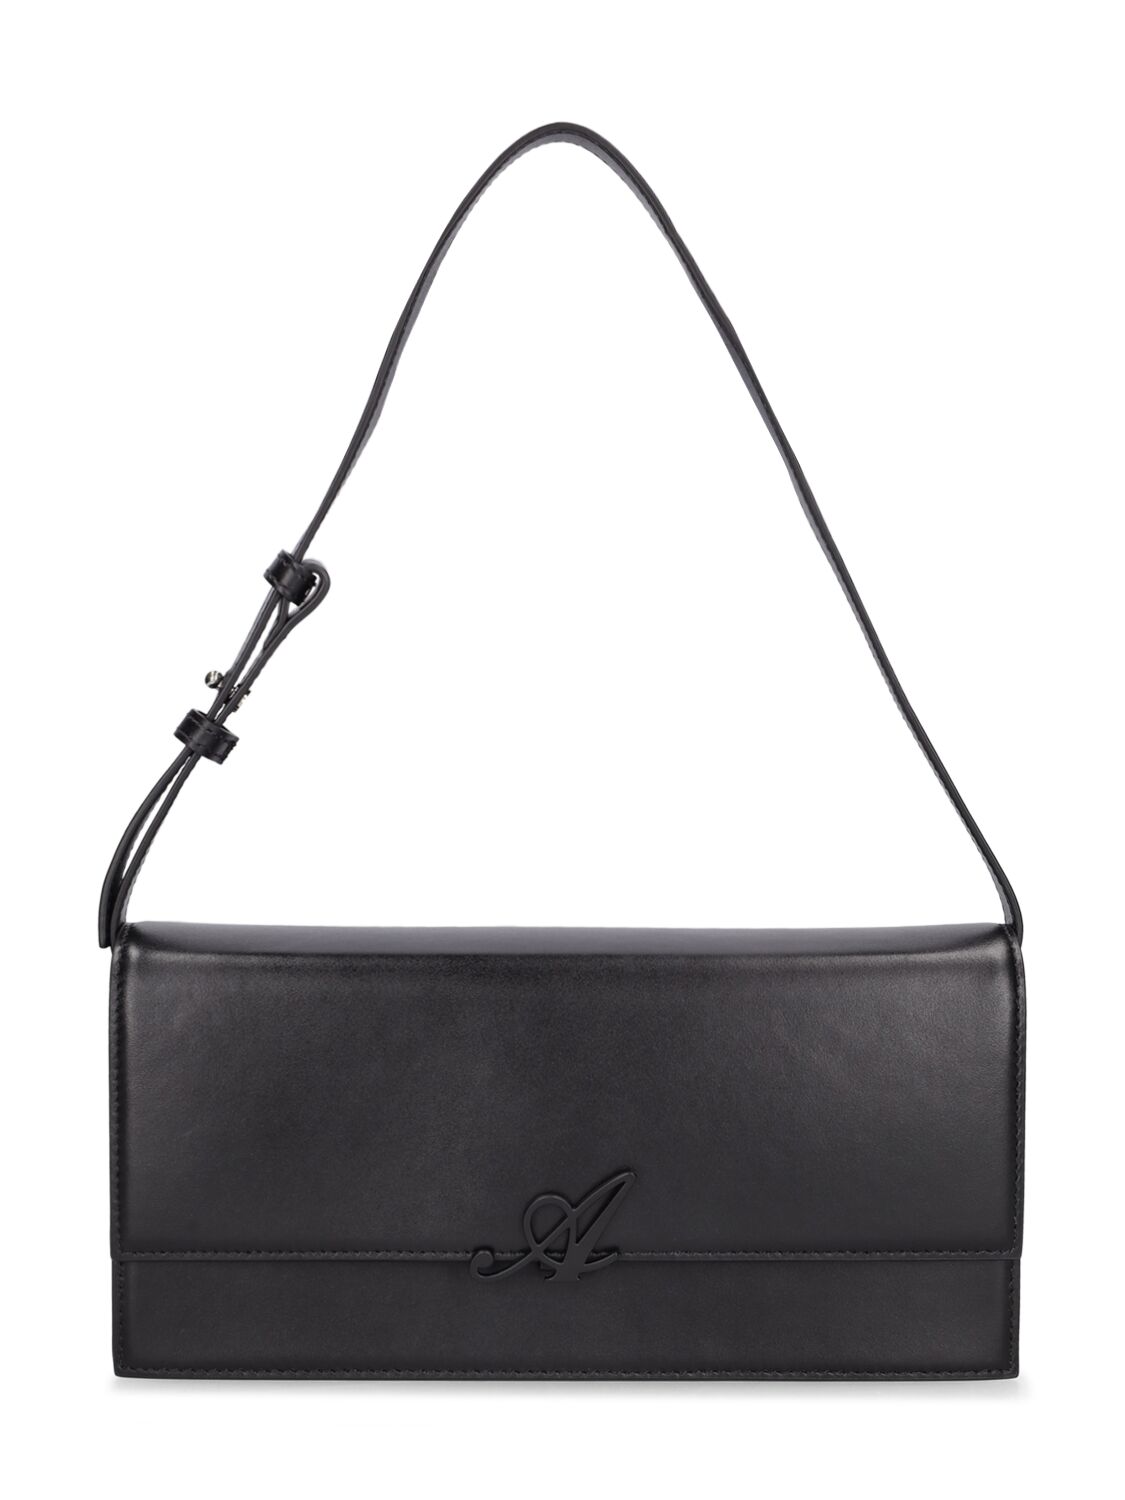 Axel Arigato Avenue Top Handle Bag In Black